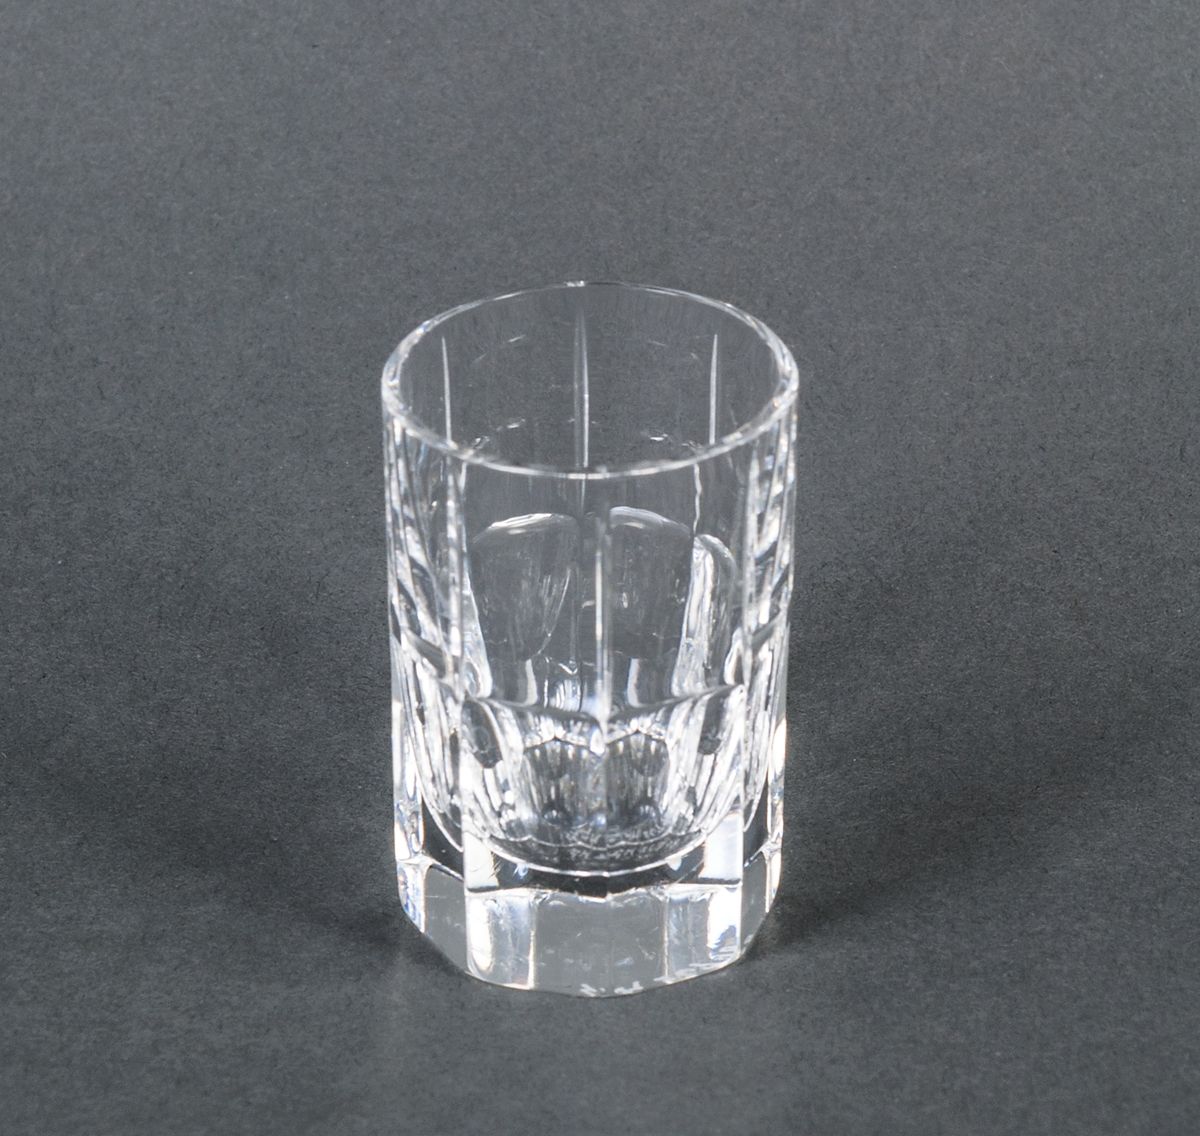 Sake/whiskyglas, ofärgat, prov. Övre halvan cylindrisk med vertikala dekorränder, nedre halvan åttkantig. Design Gunnar Cyrén för Orrefors Glasbruk.